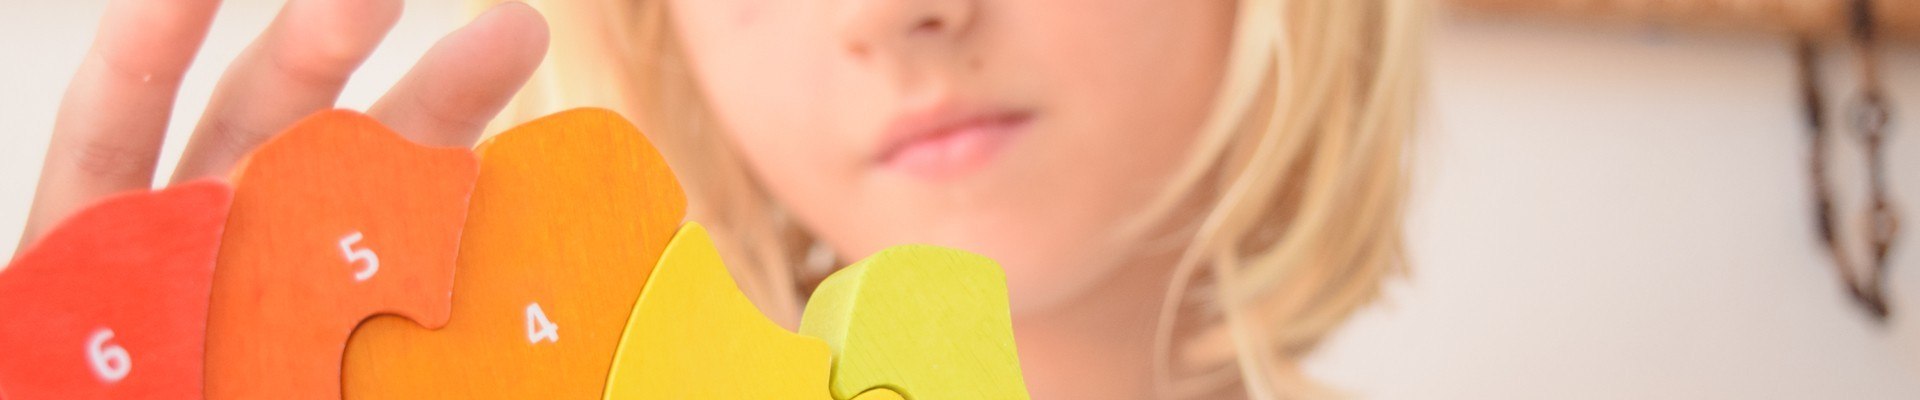 Comprar juguetes didacticos mejorar razonamiento lógico niños | Veobio